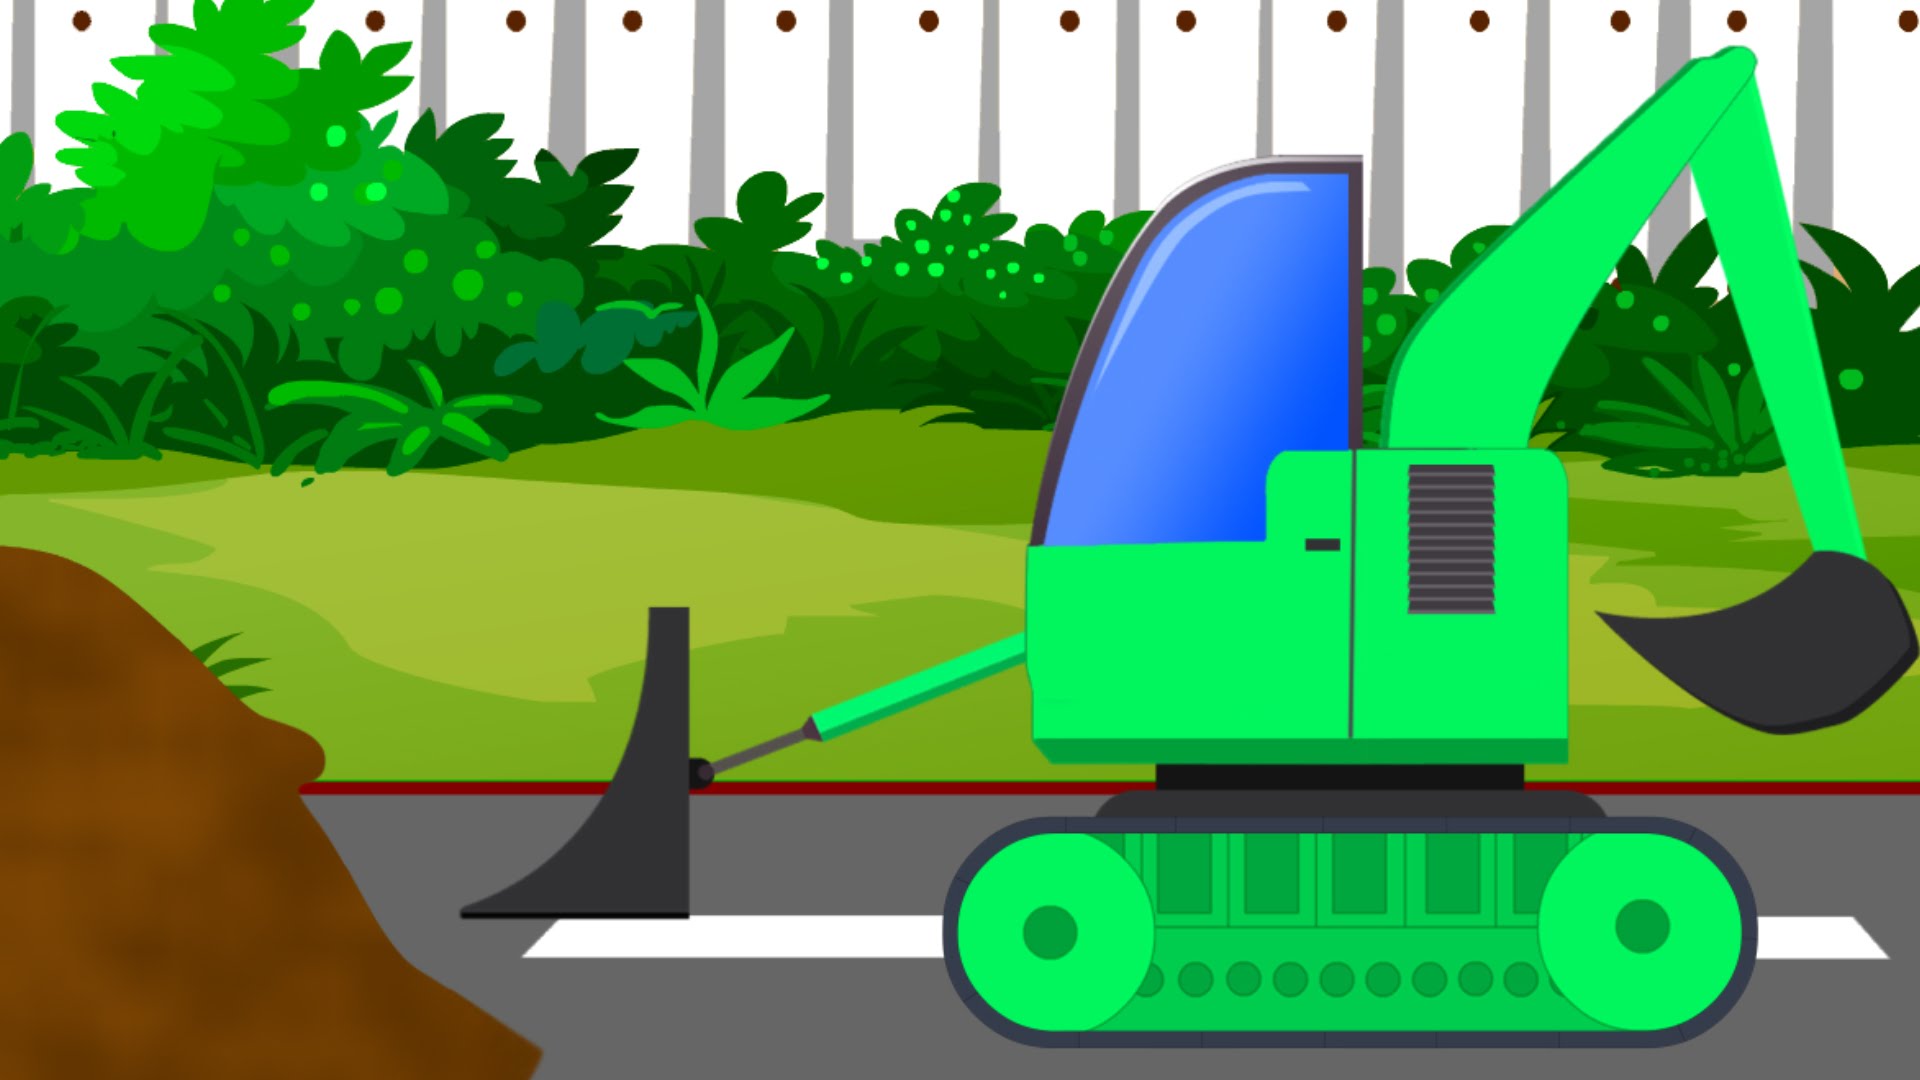 bulldozer clipart green